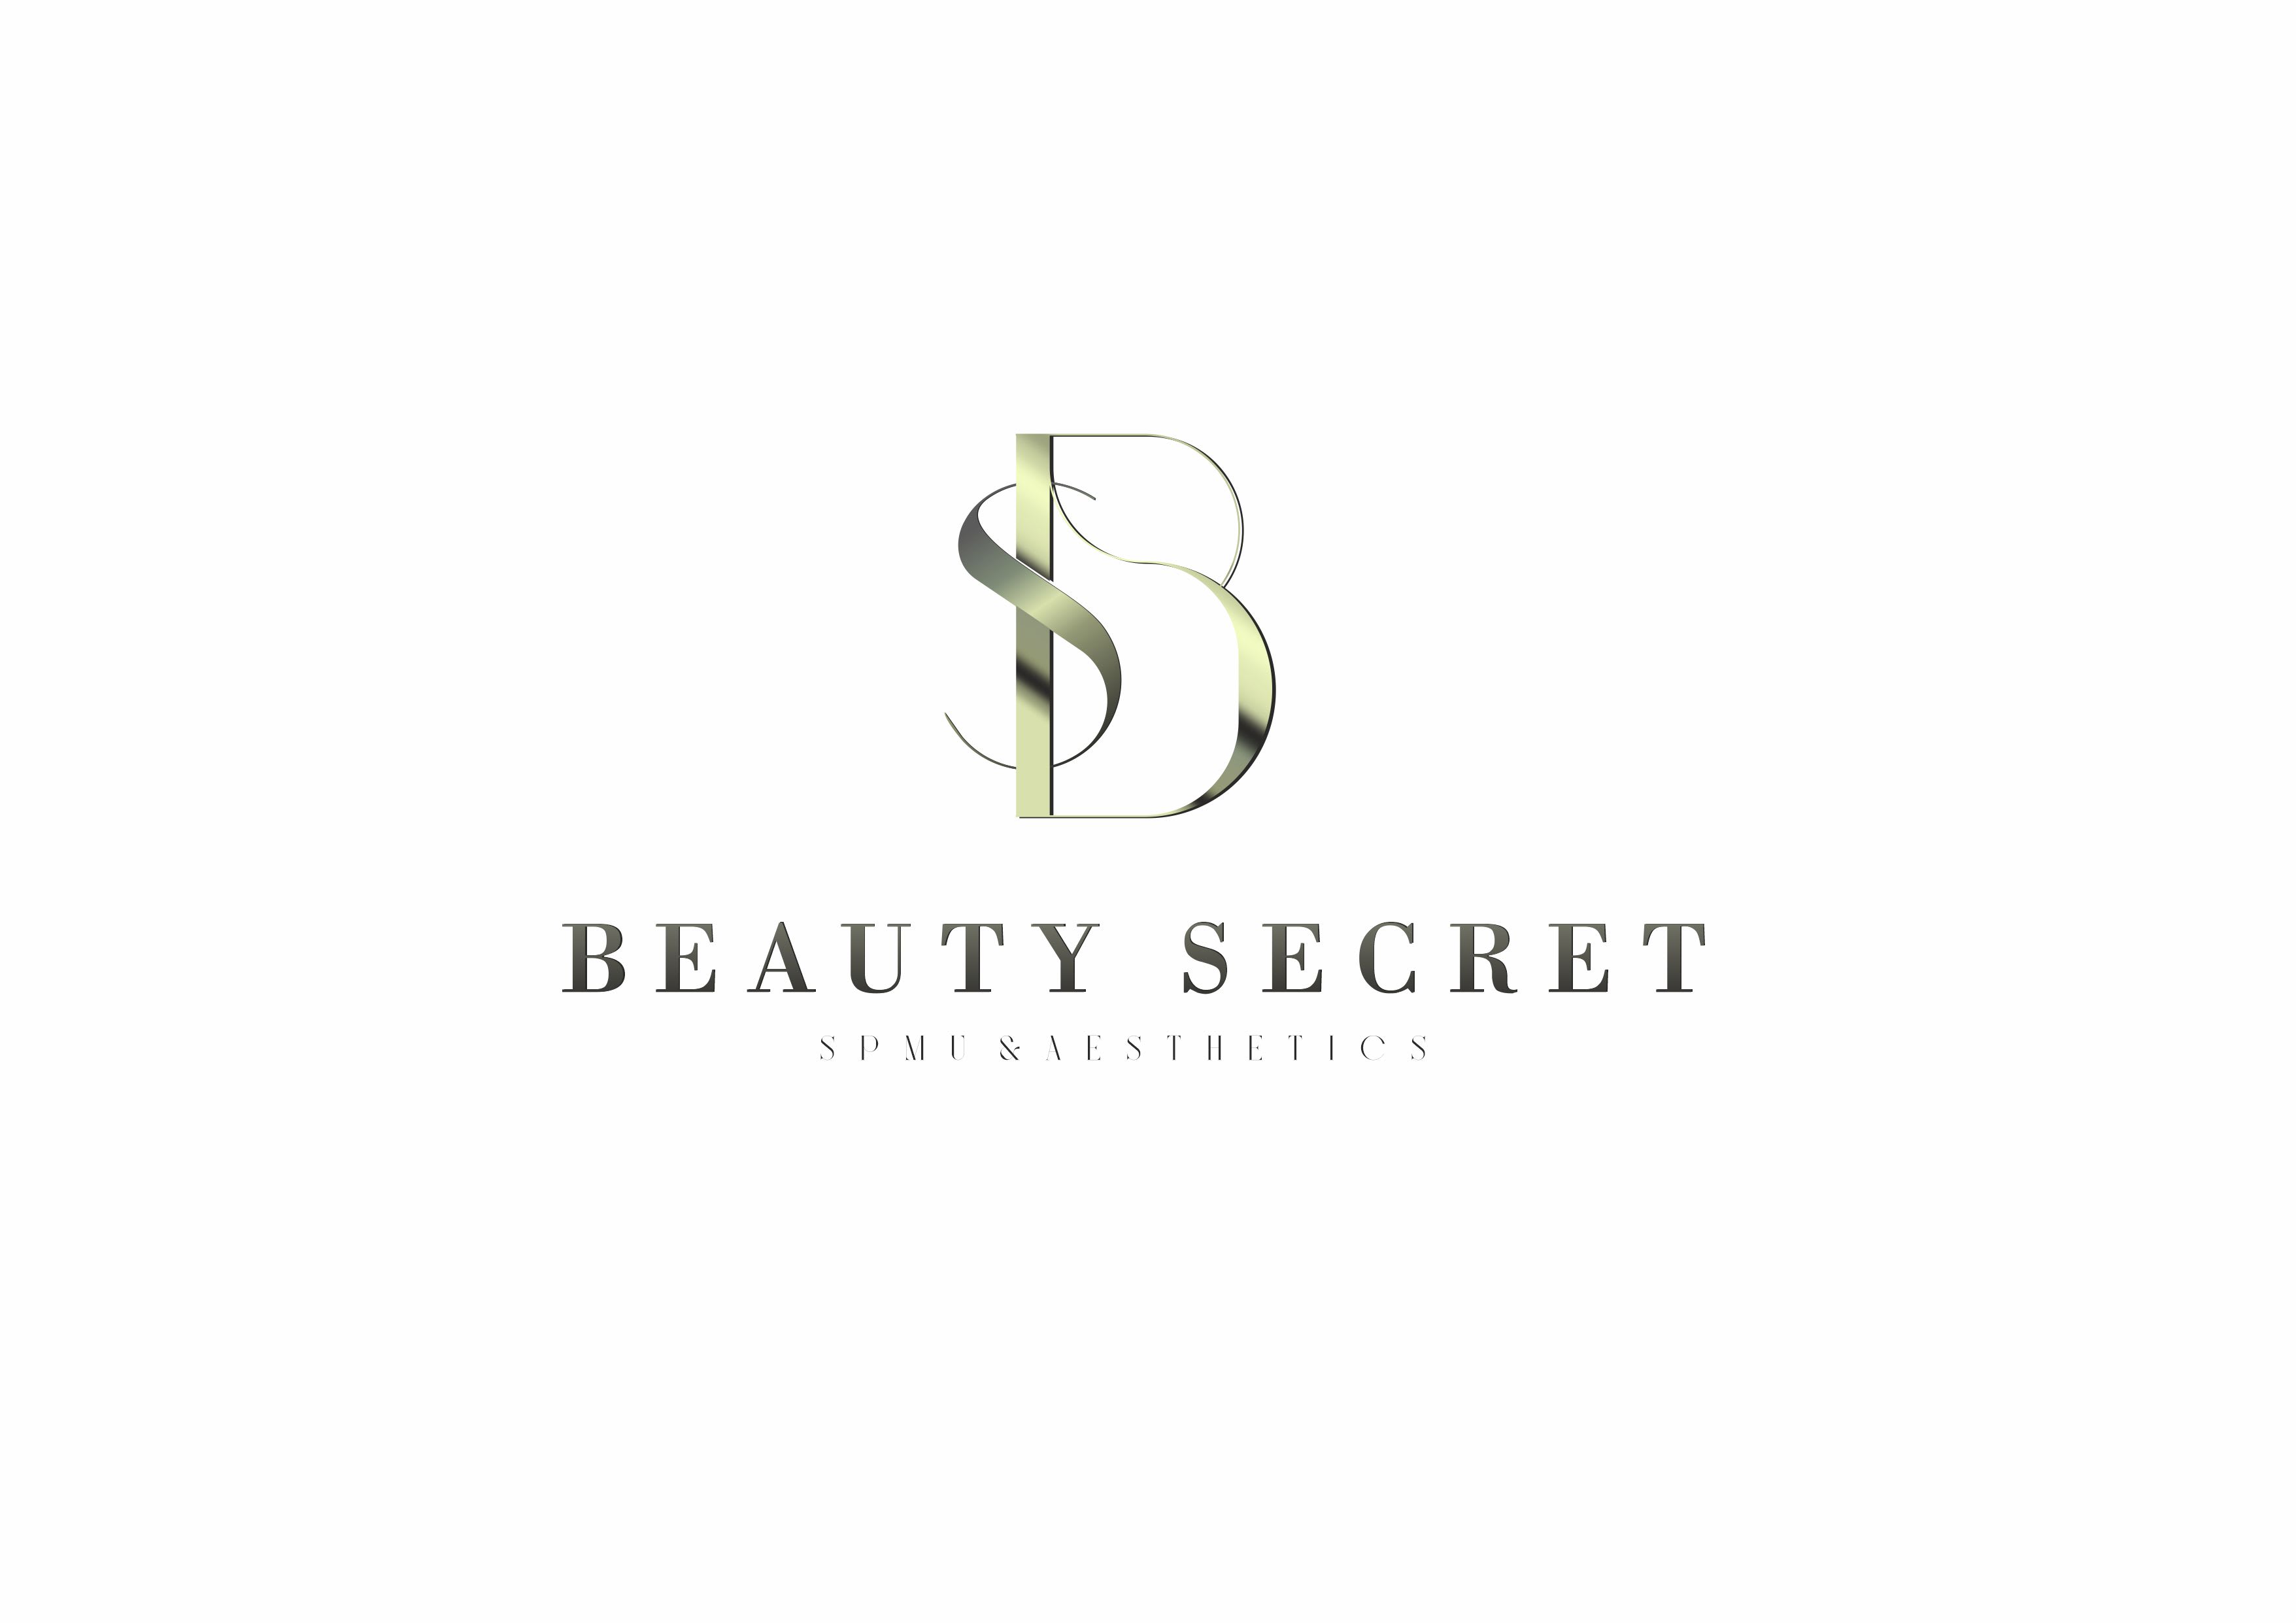 Beauty secret